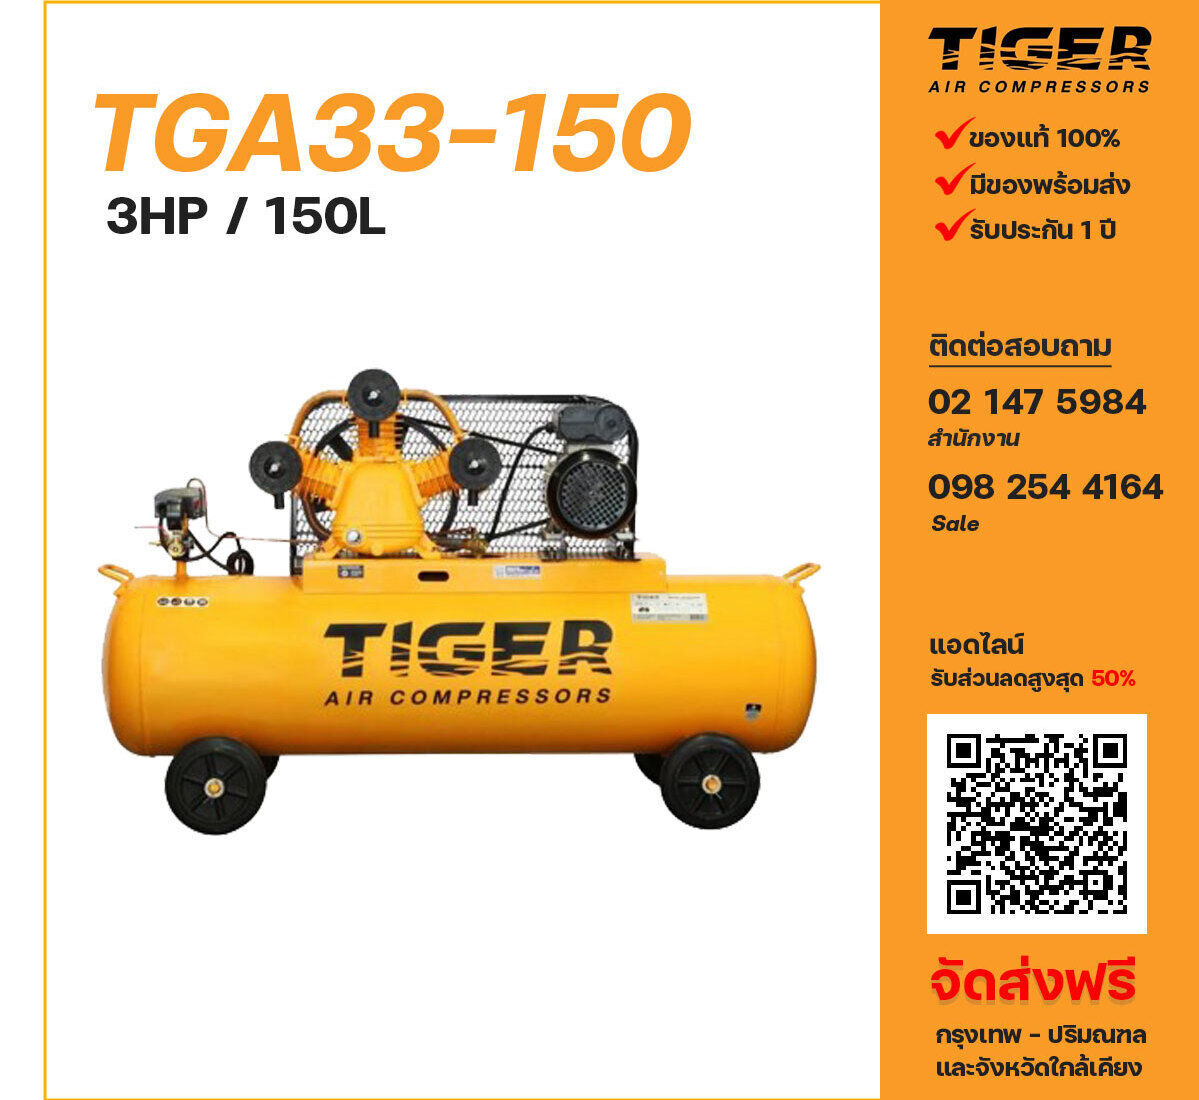 ปั๊มลมไทเกอร์ TIGER TGA33-150 220V ปั๊มลมลูกสูบ ขนาด 3 สูบ 3 แรงม้า 150 ลิตร TIGER พร้อมมอเตอร์ ไฟ 220V ส่งฟรี กรุงเทพฯ-ปริมณฑล รับประกัน 1 ปี